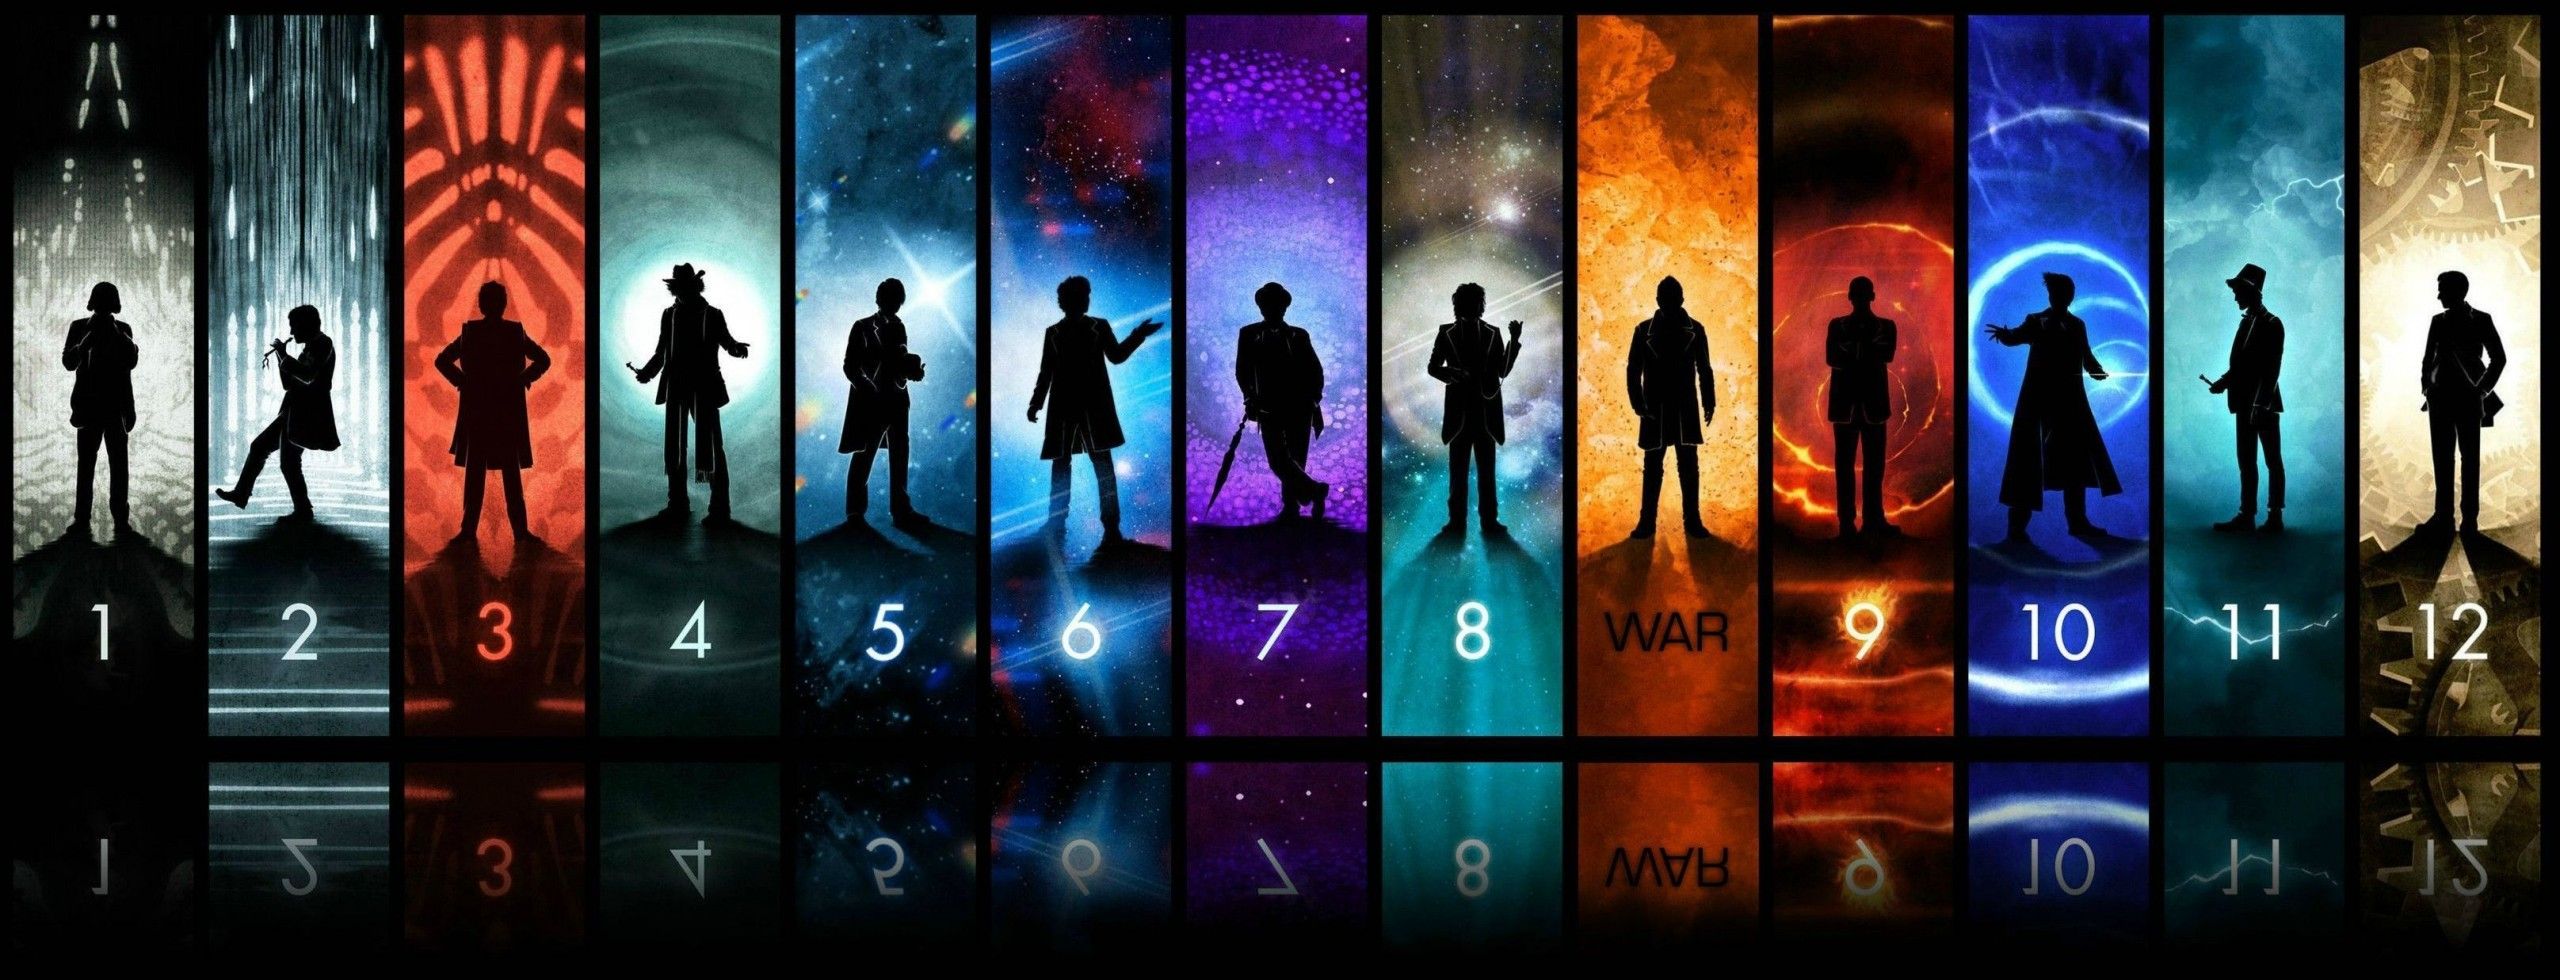 Doctor Who : retour sur une série mythique